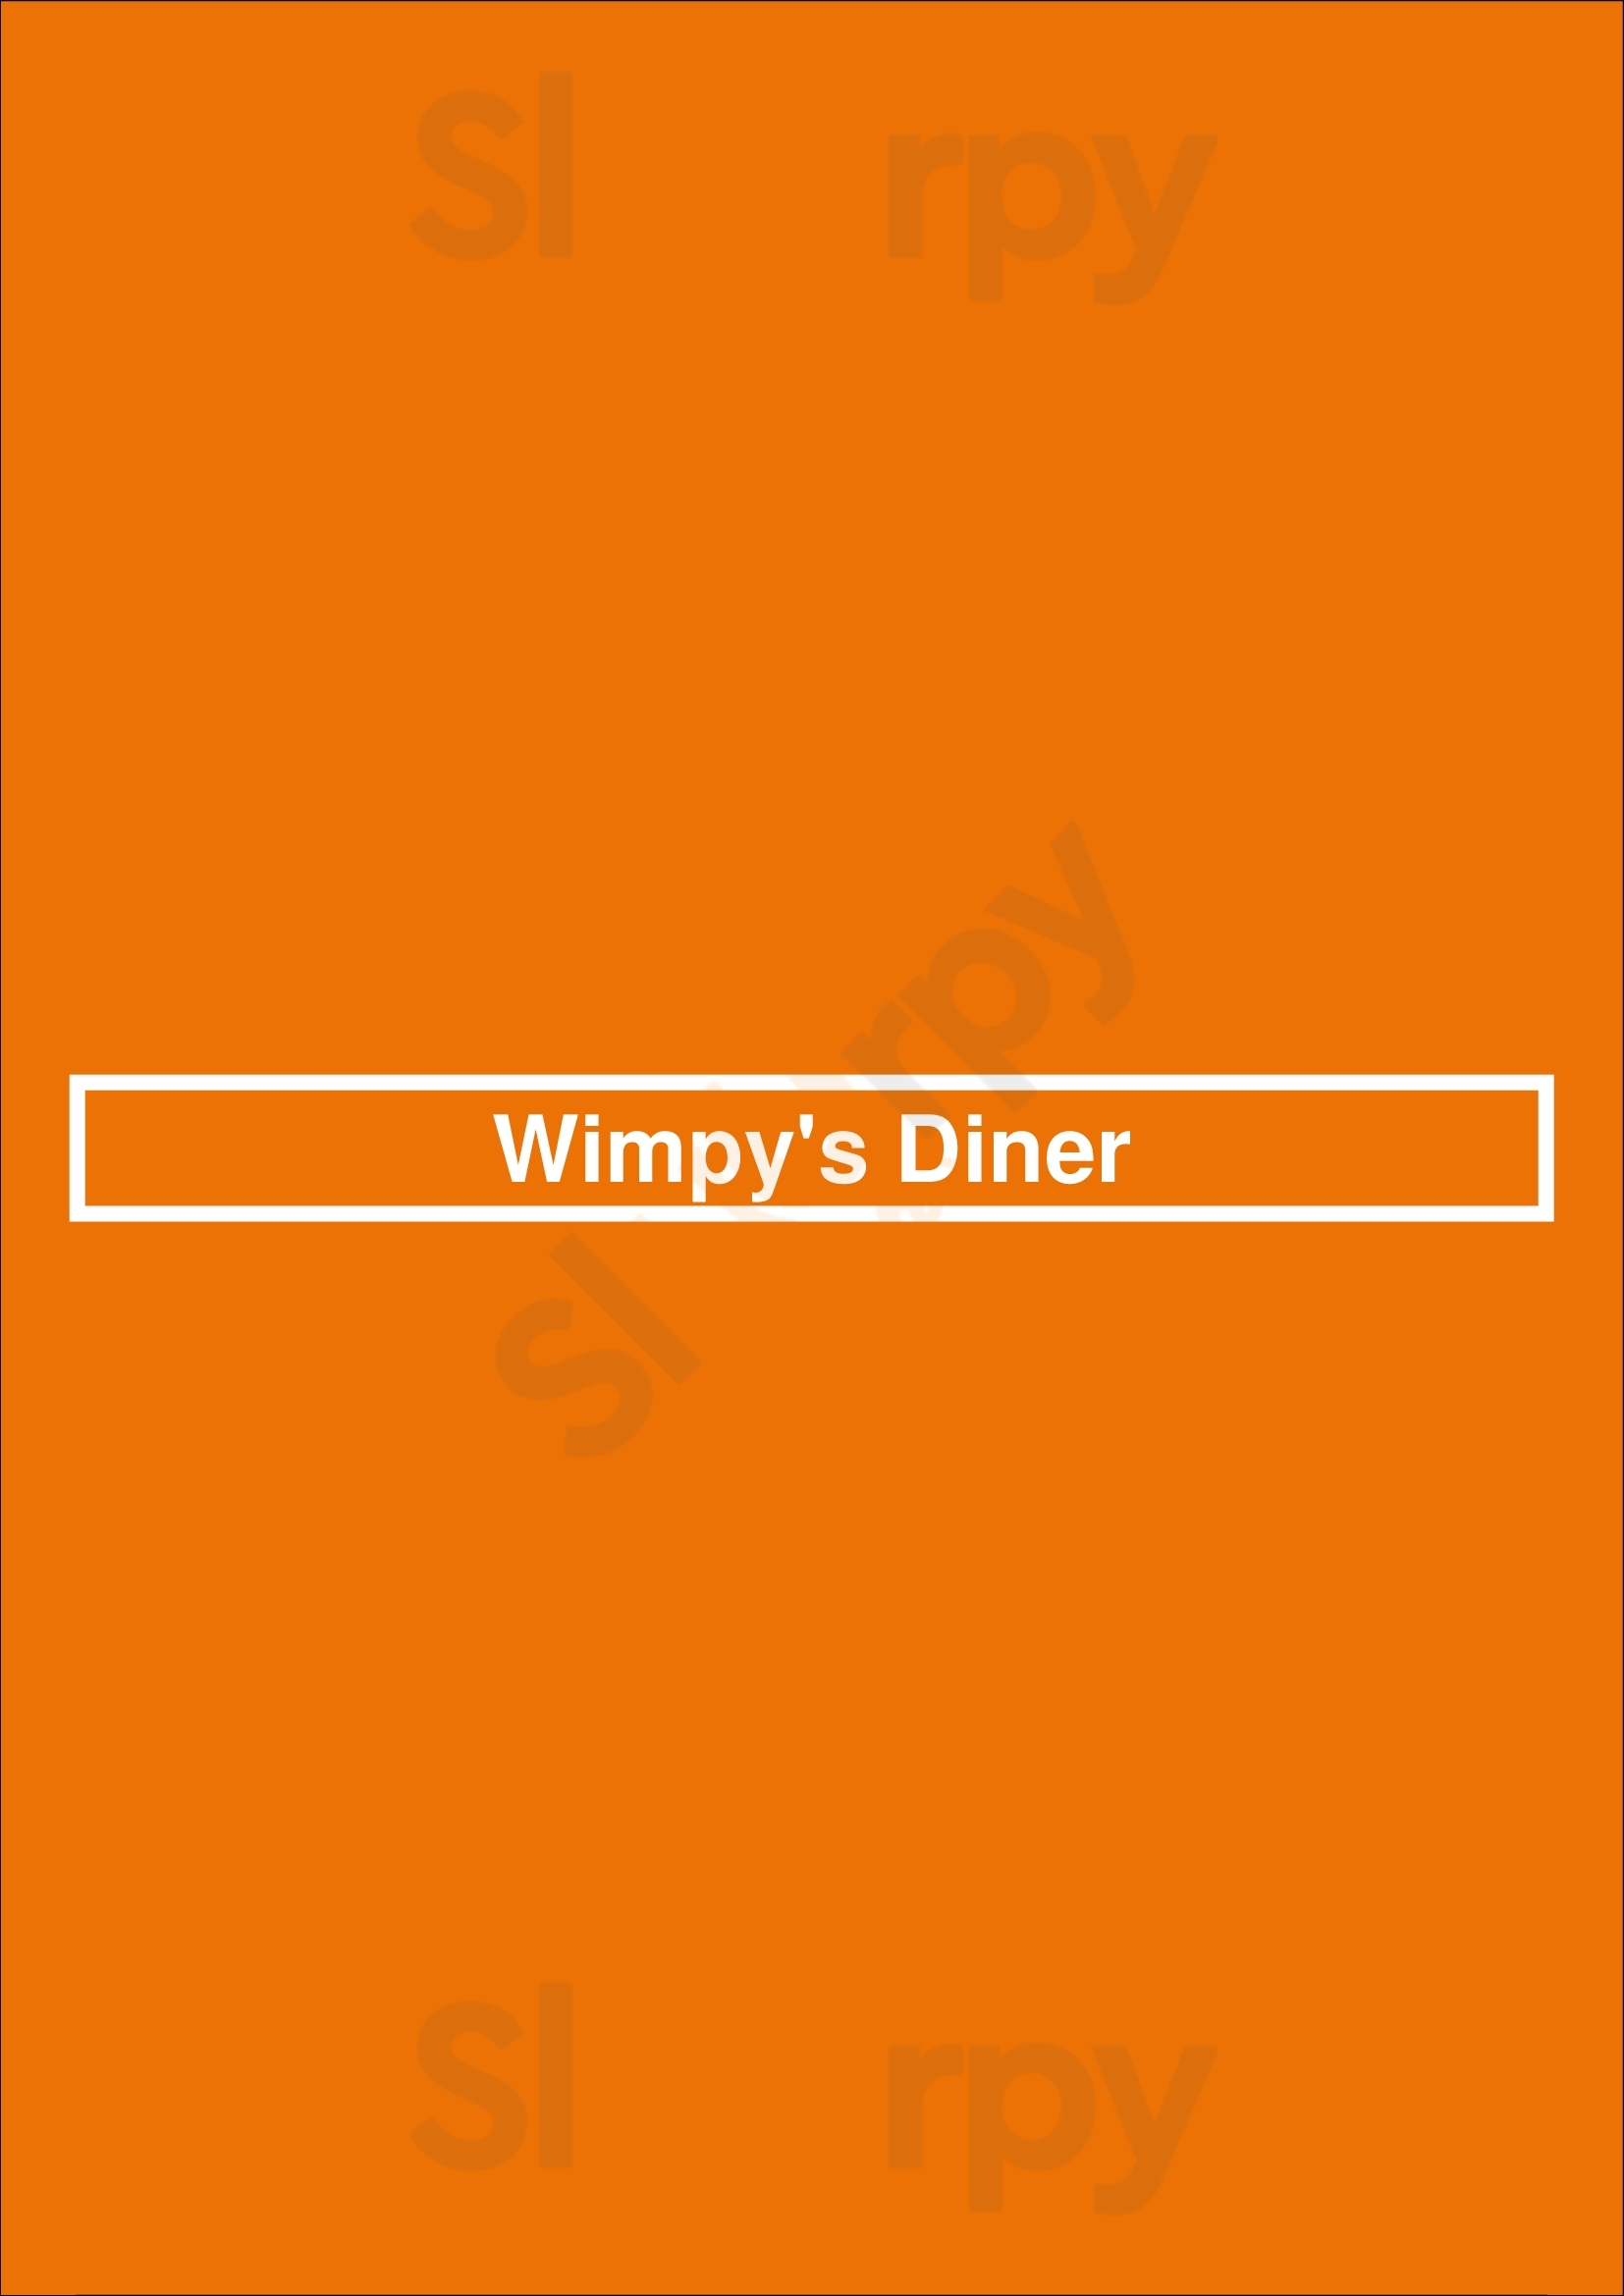 Wimpy's Diner Toronto Menu - 1